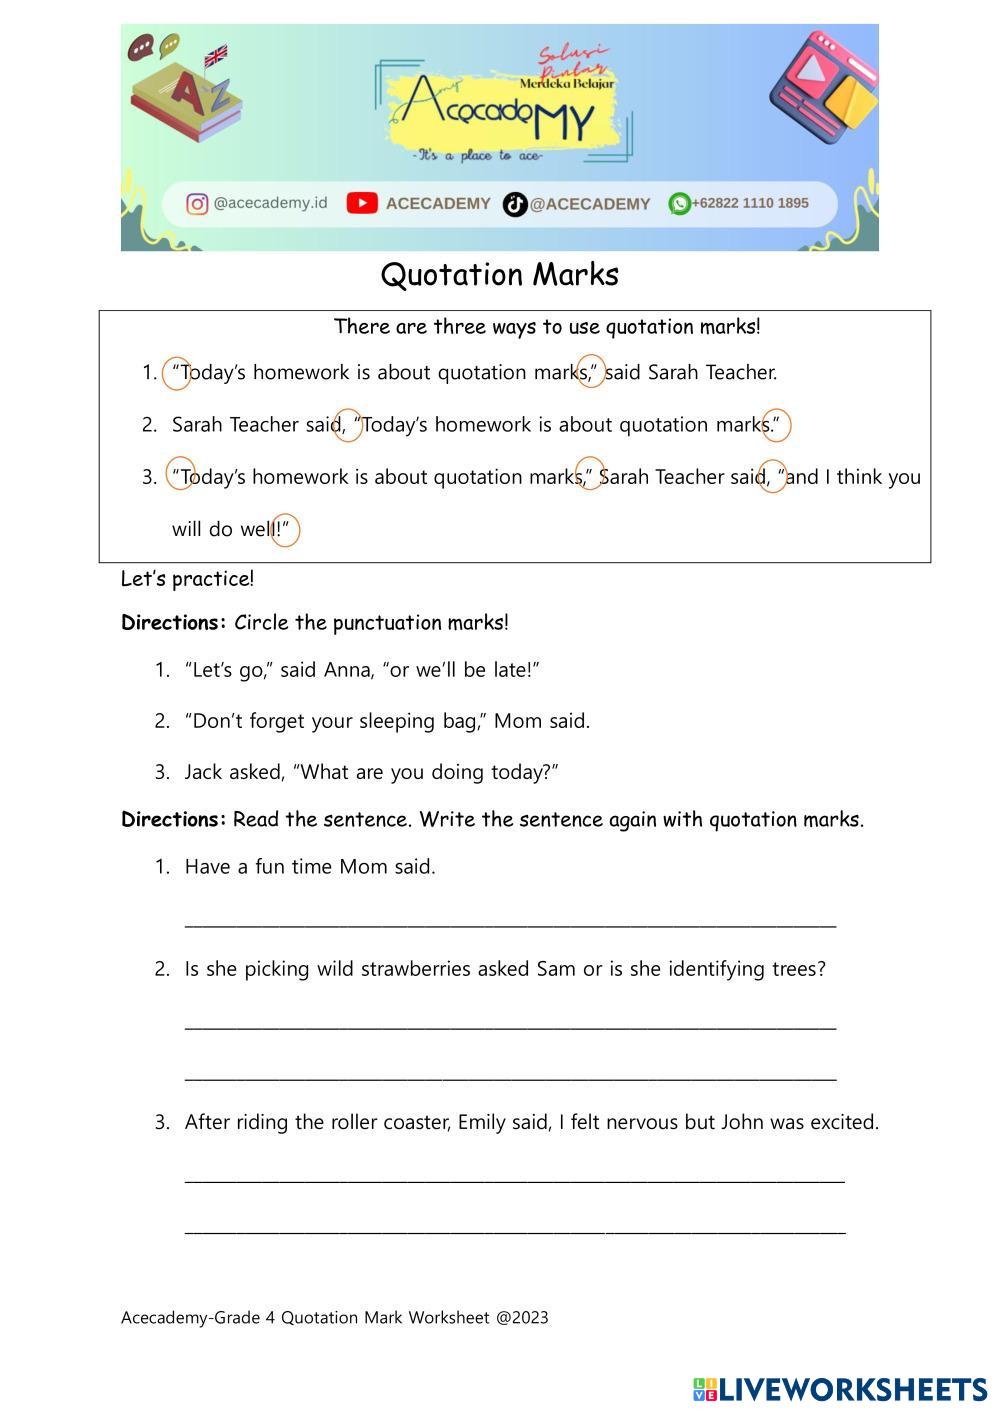 speech marks worksheet for class 4